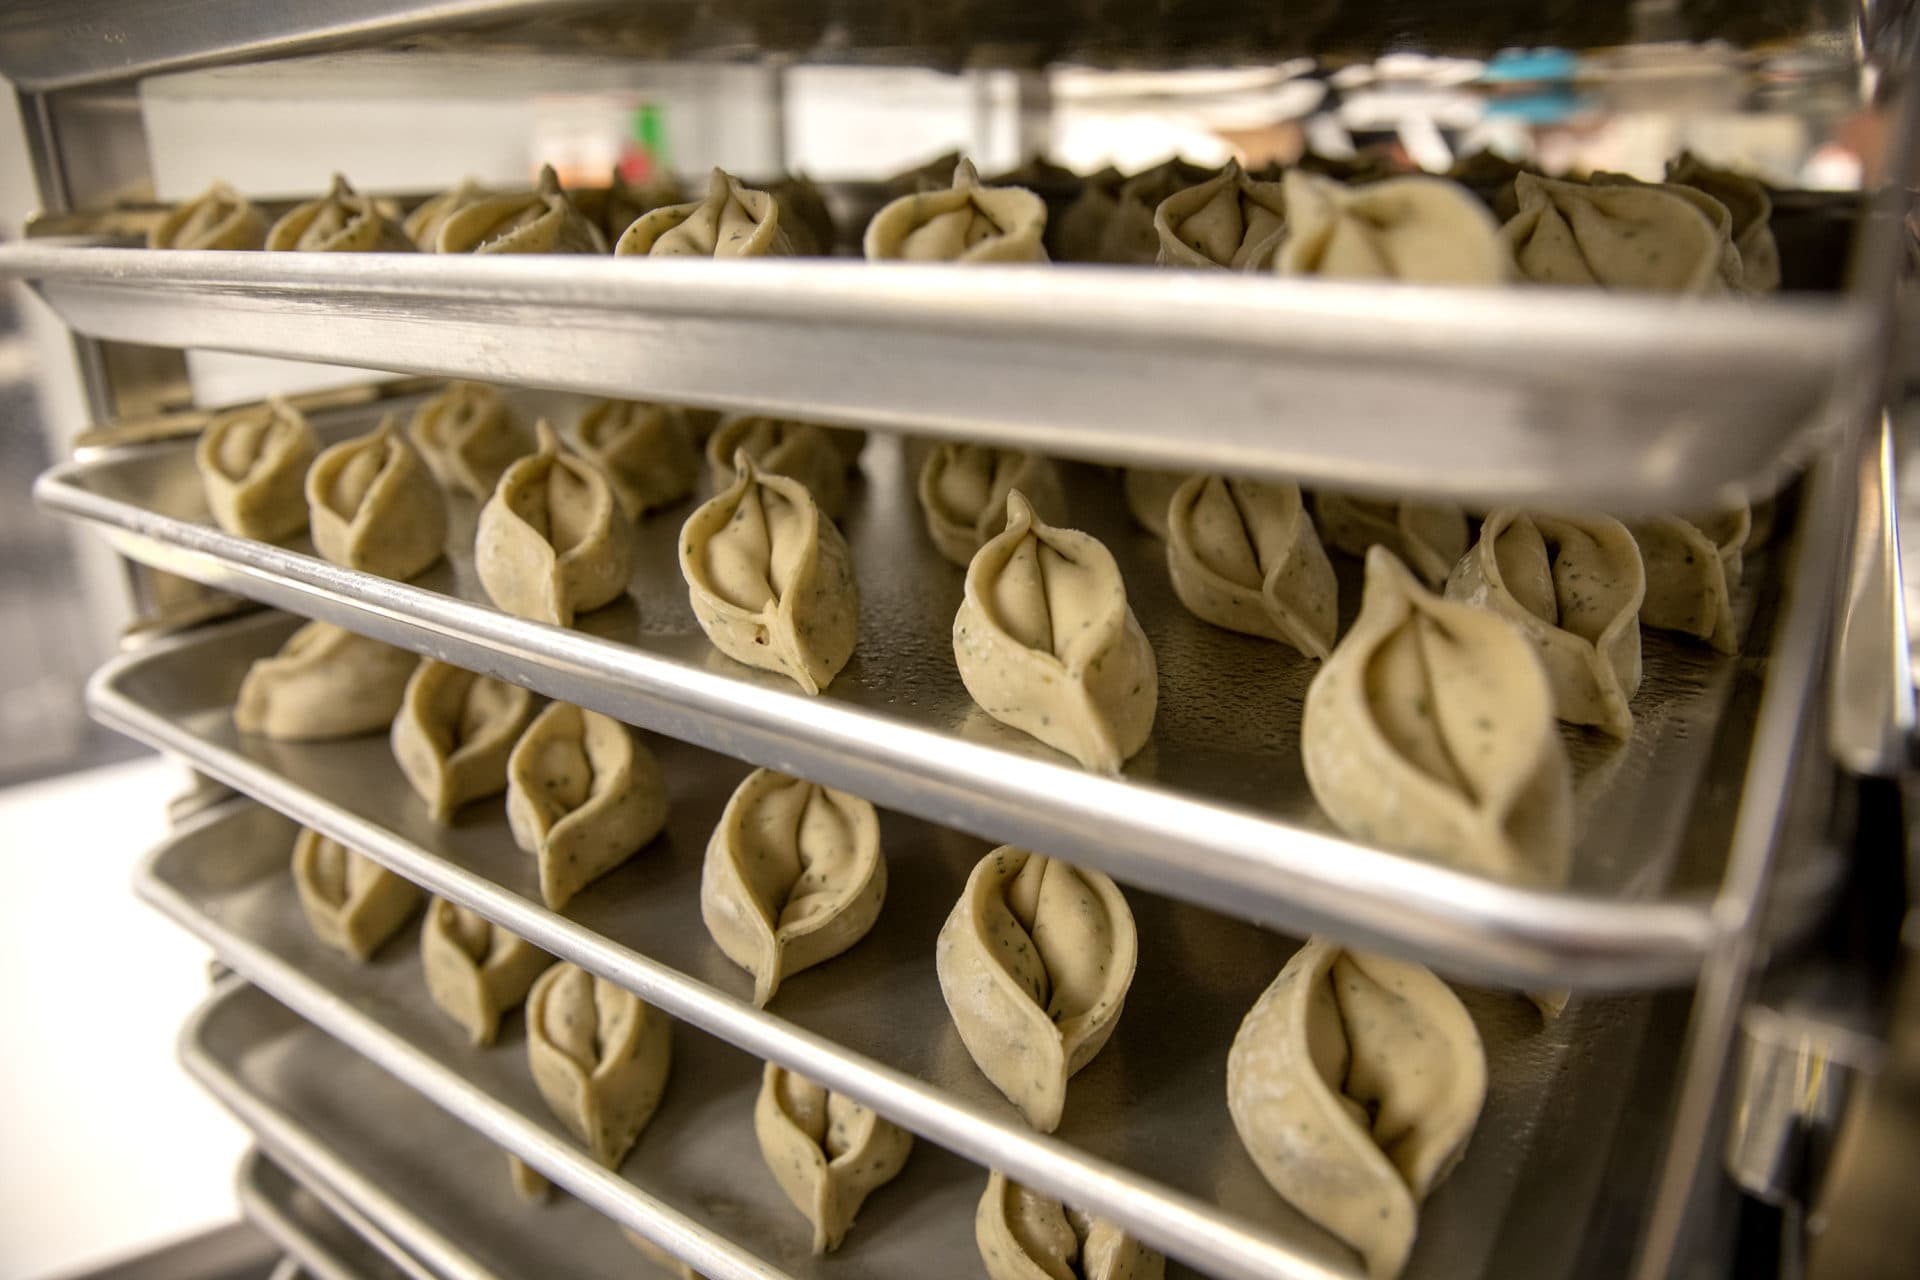 Dumplings at Mei Mei's Dumpling Factory wait on trays to go into the oven. (Robin Lubbock/WBUR)